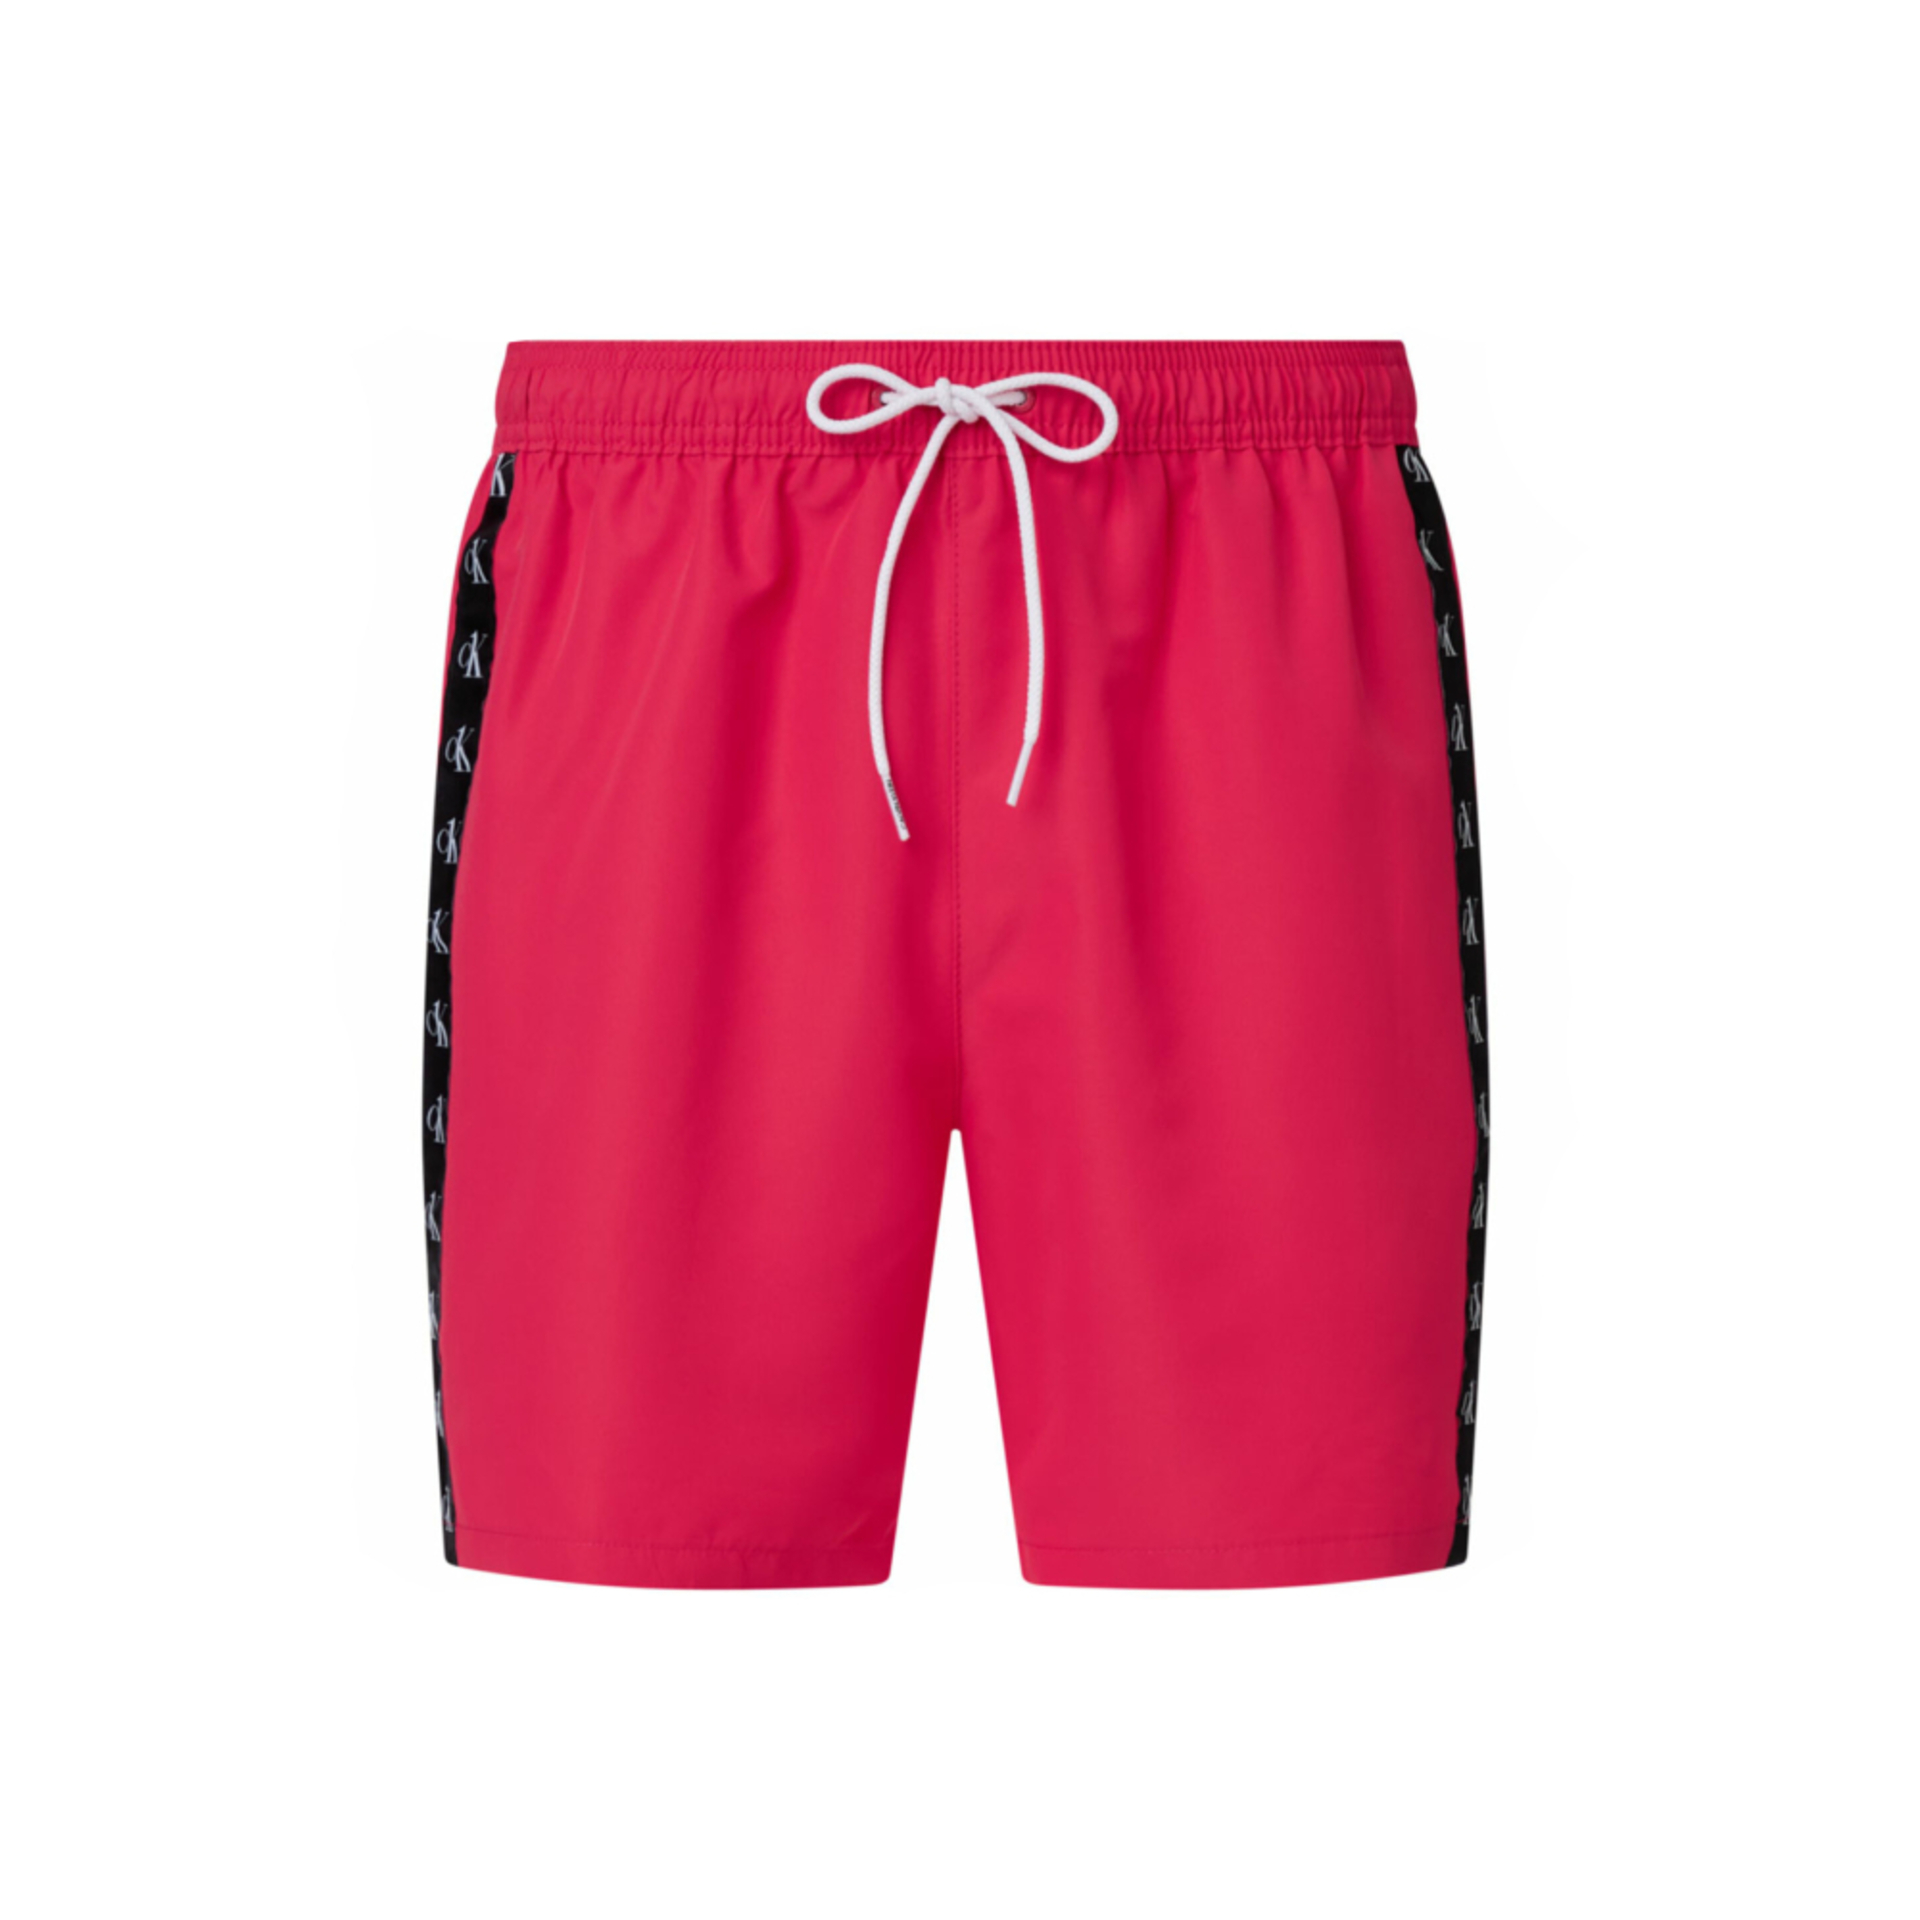 Calvin Klein pánské tmavě růžové plavky - XL (TZK)